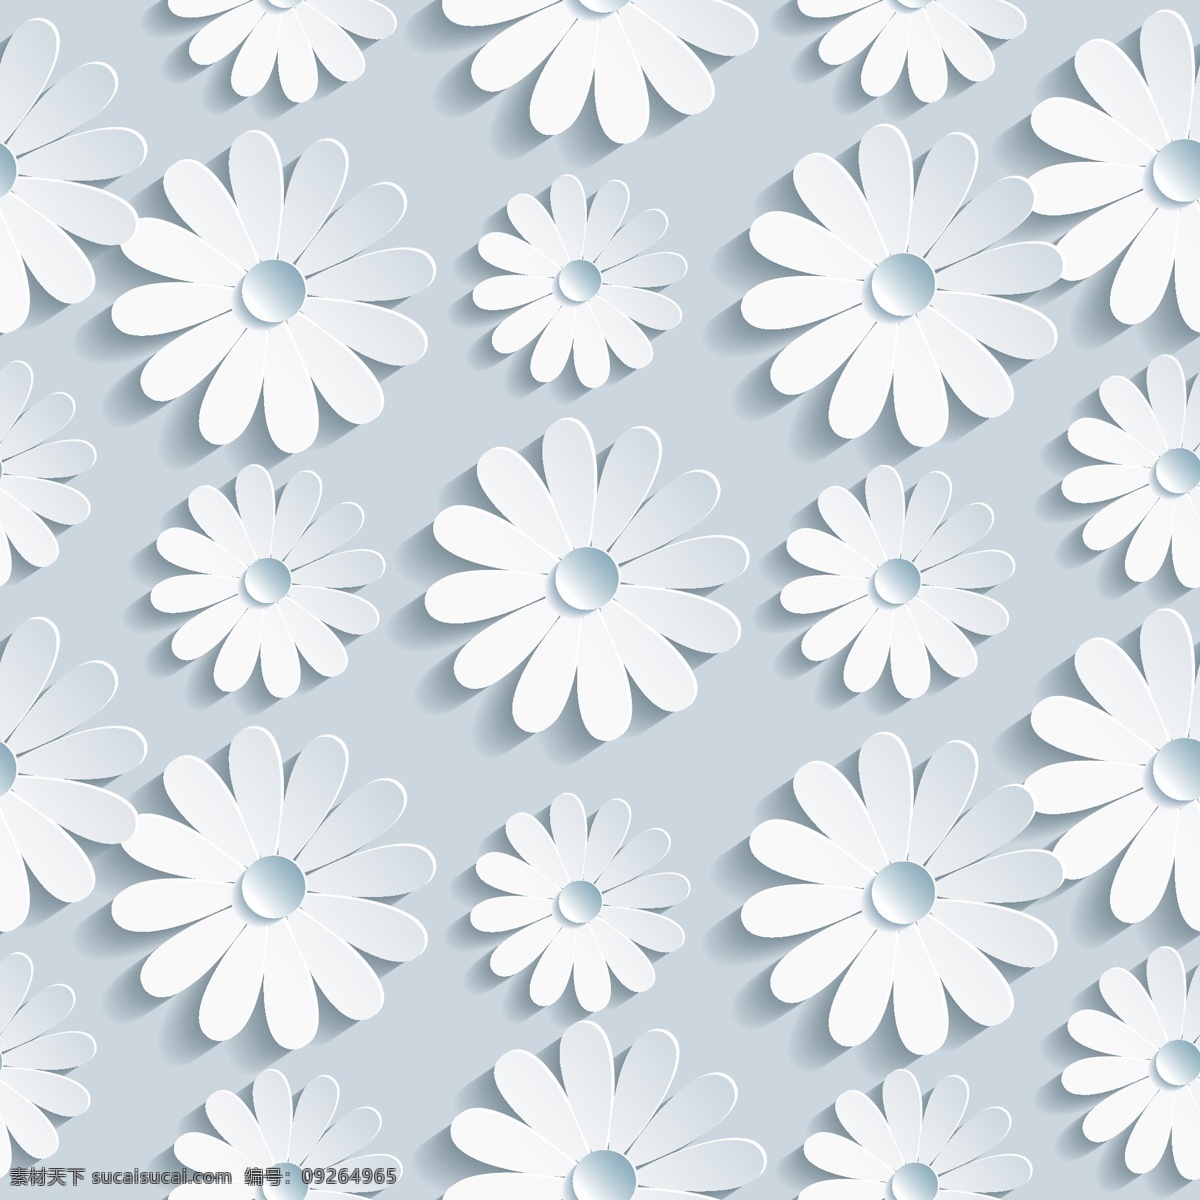 白色剪纸花卉 3d花卉背景 抽象花卉背景 手绘花卉 墙纸 装饰花卉 创意 花卉 剪纸 矢量 节日庆祝 文化艺术 抽象底纹 底纹边框